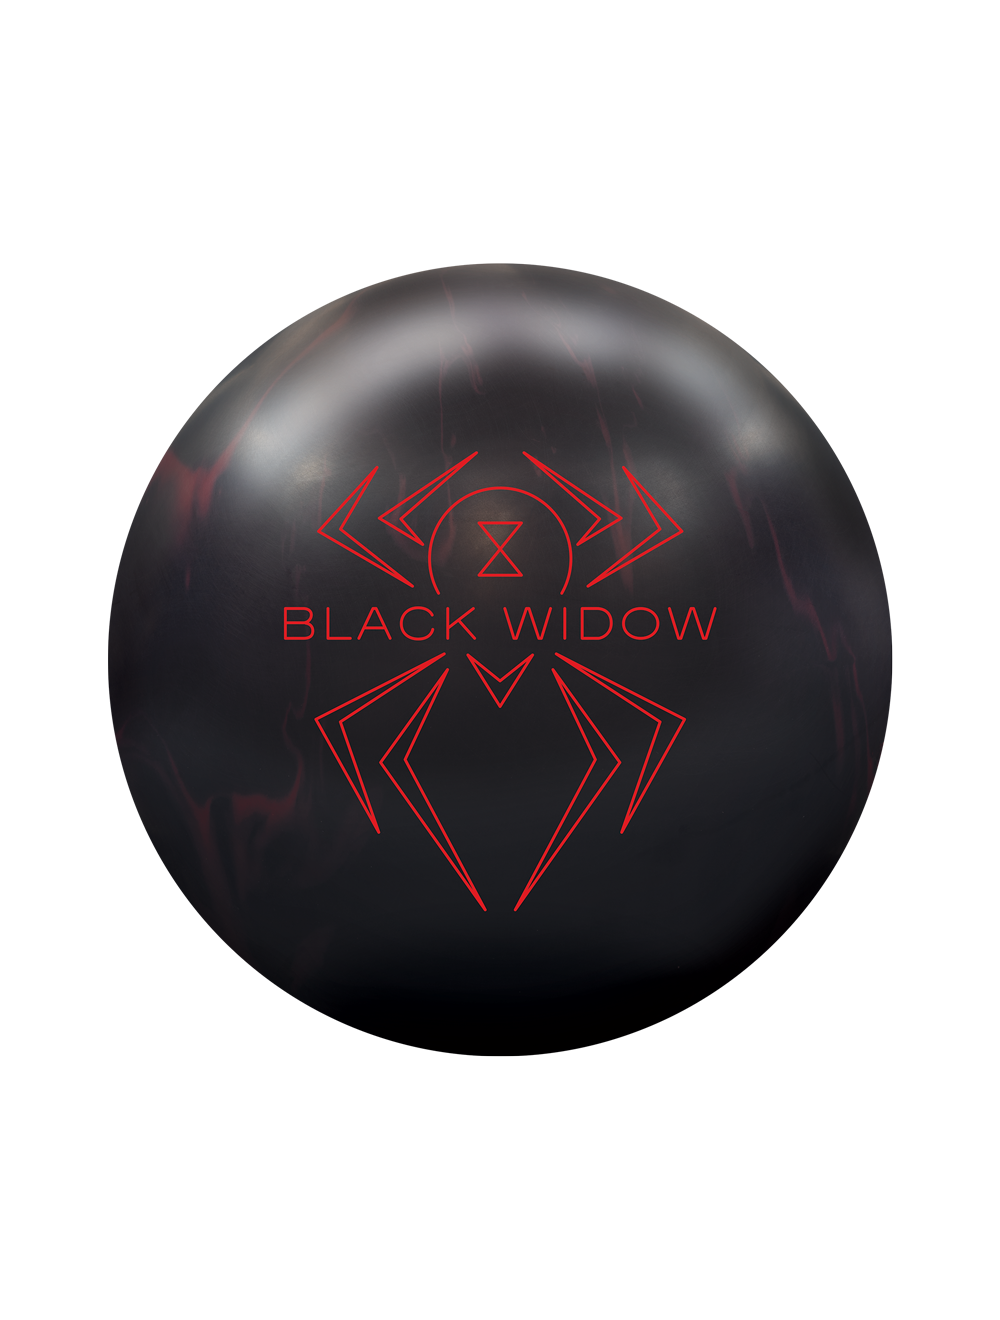 Hammer Black Widow 2.0 Bowling Ball